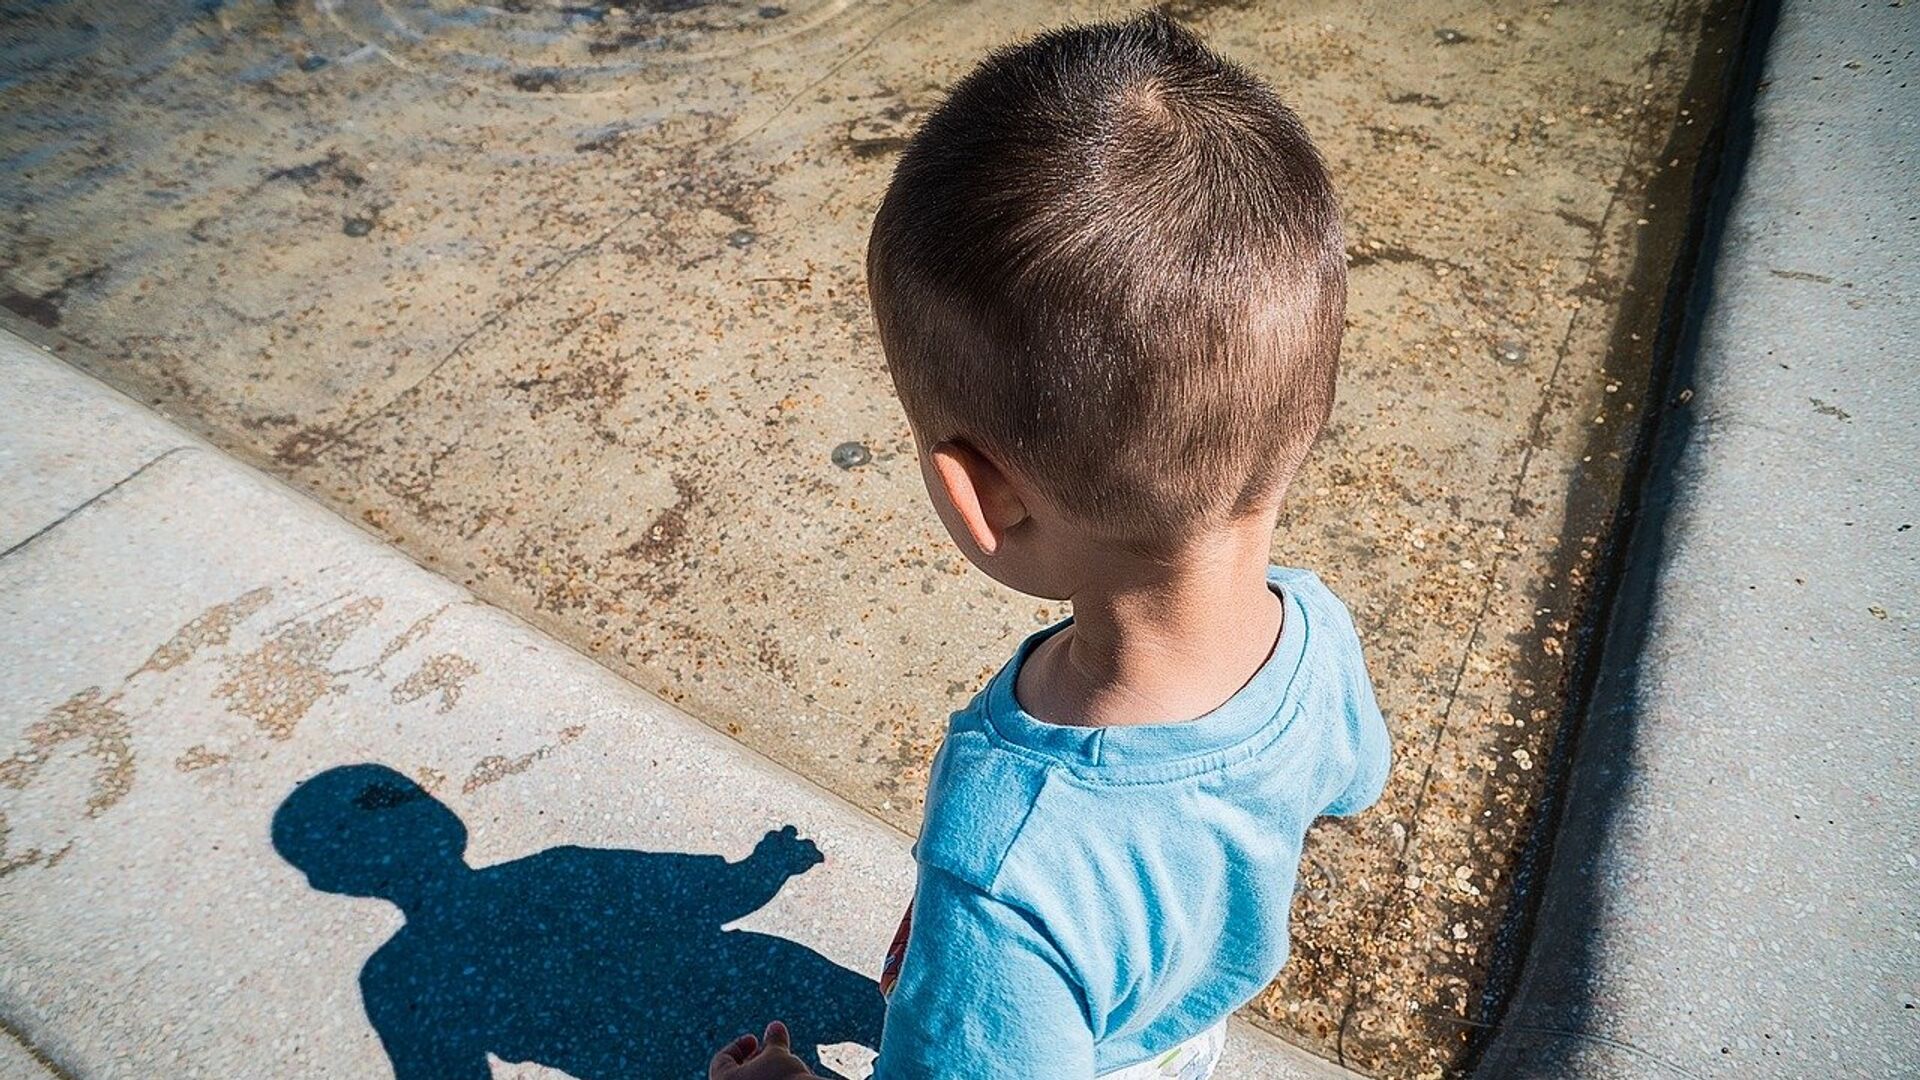 Ребенок смотрит на свою тень, архивное фото - Sputnik Қазақстан, 1920, 29.04.2021